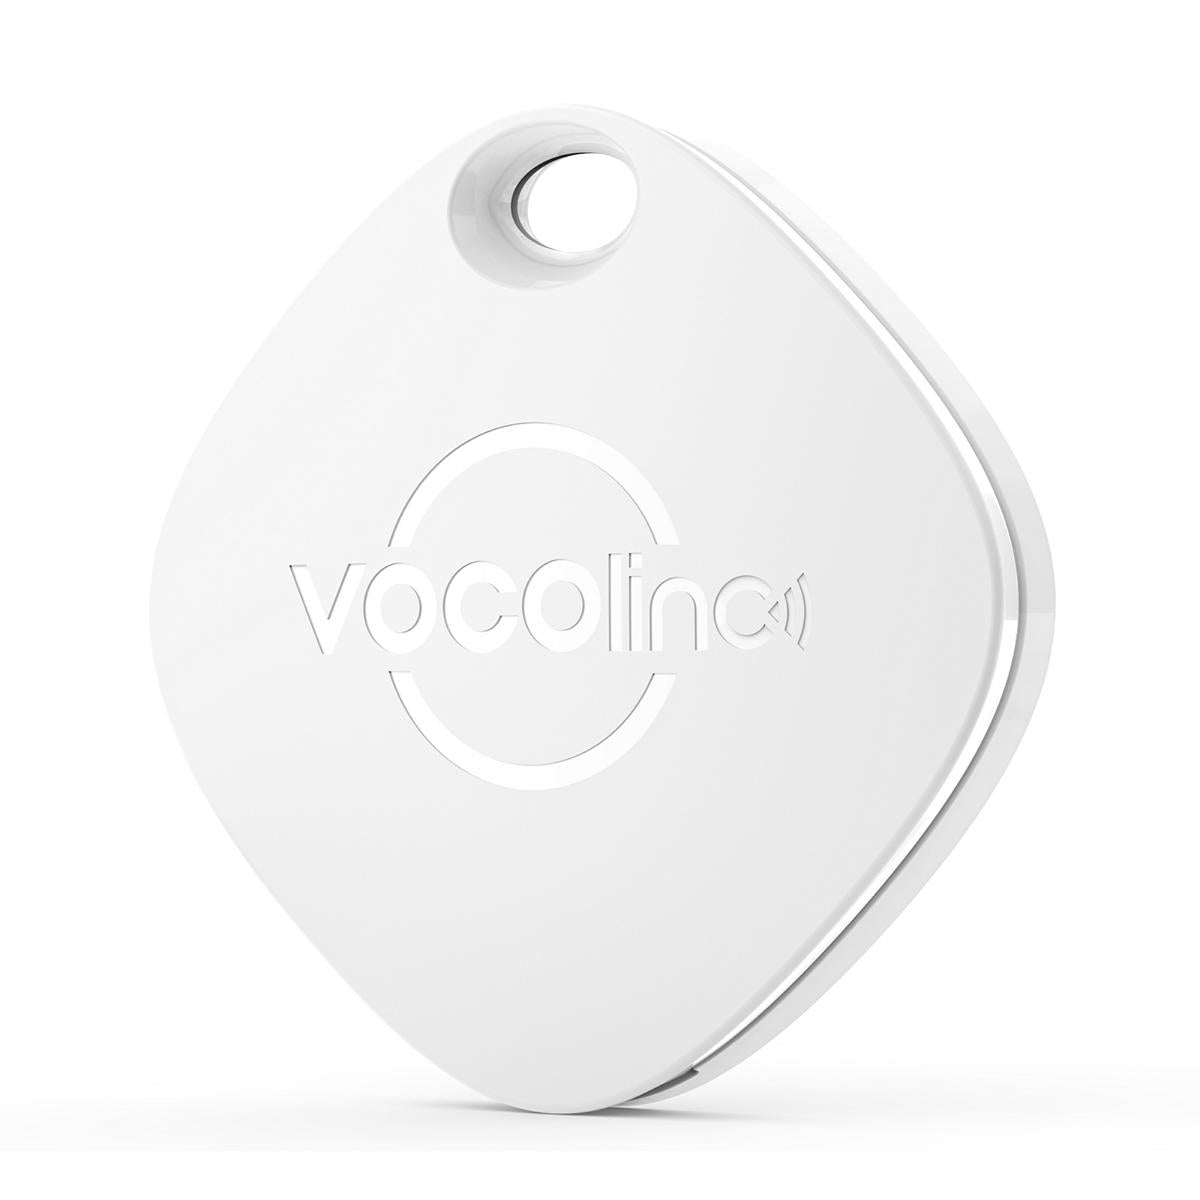 VOCOlinc White Versatile Bluetooth Finder (Only iOS)